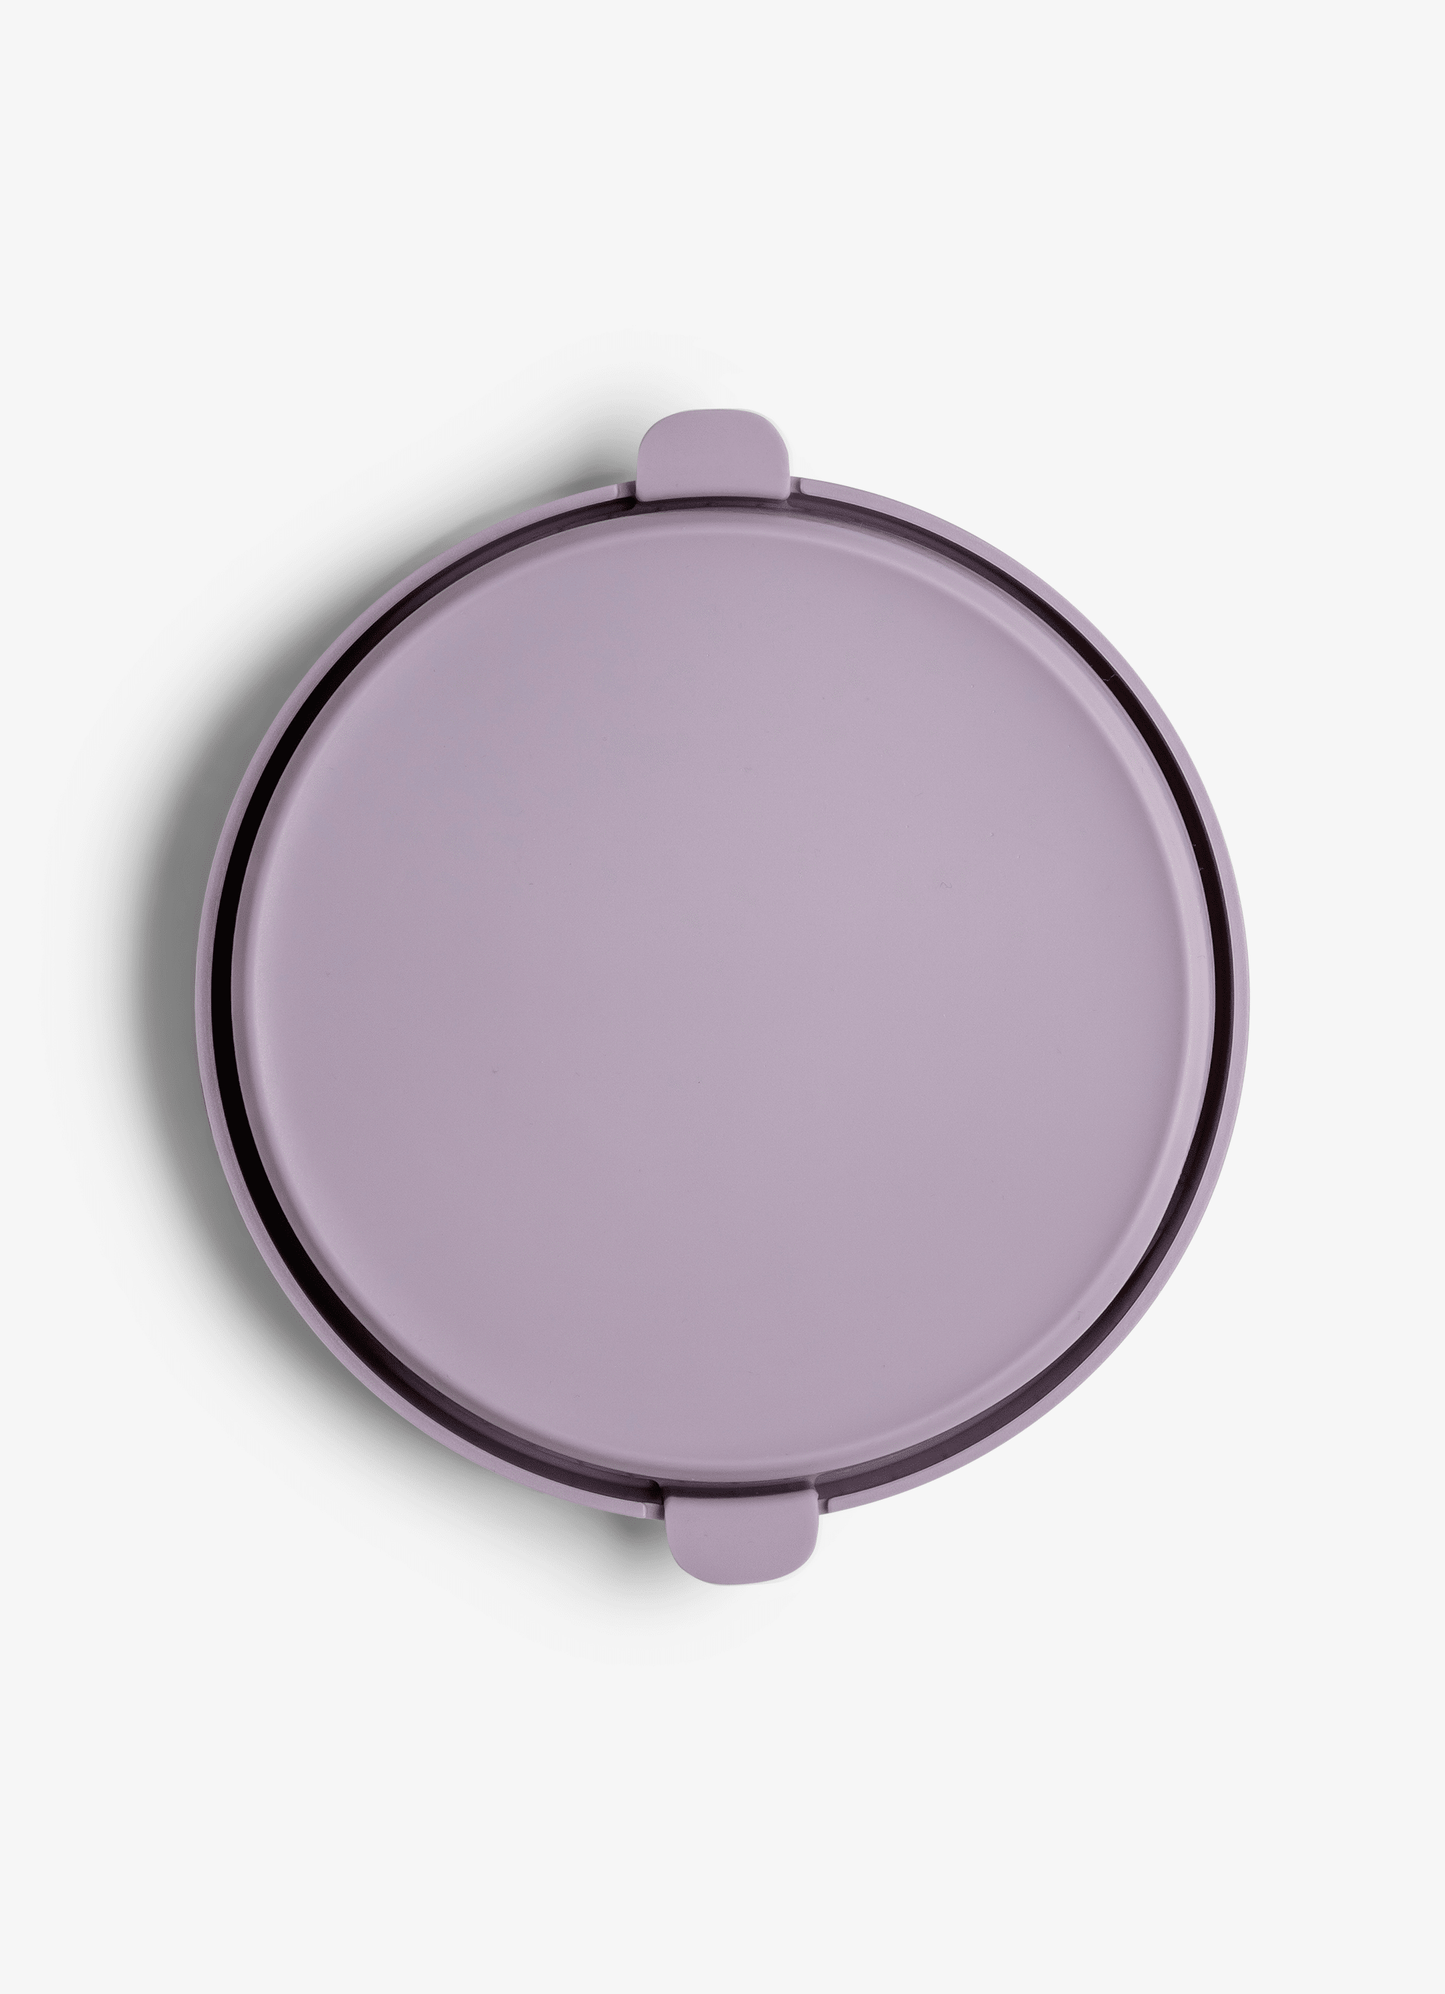 Food Jar Lid - 400ml - Purple